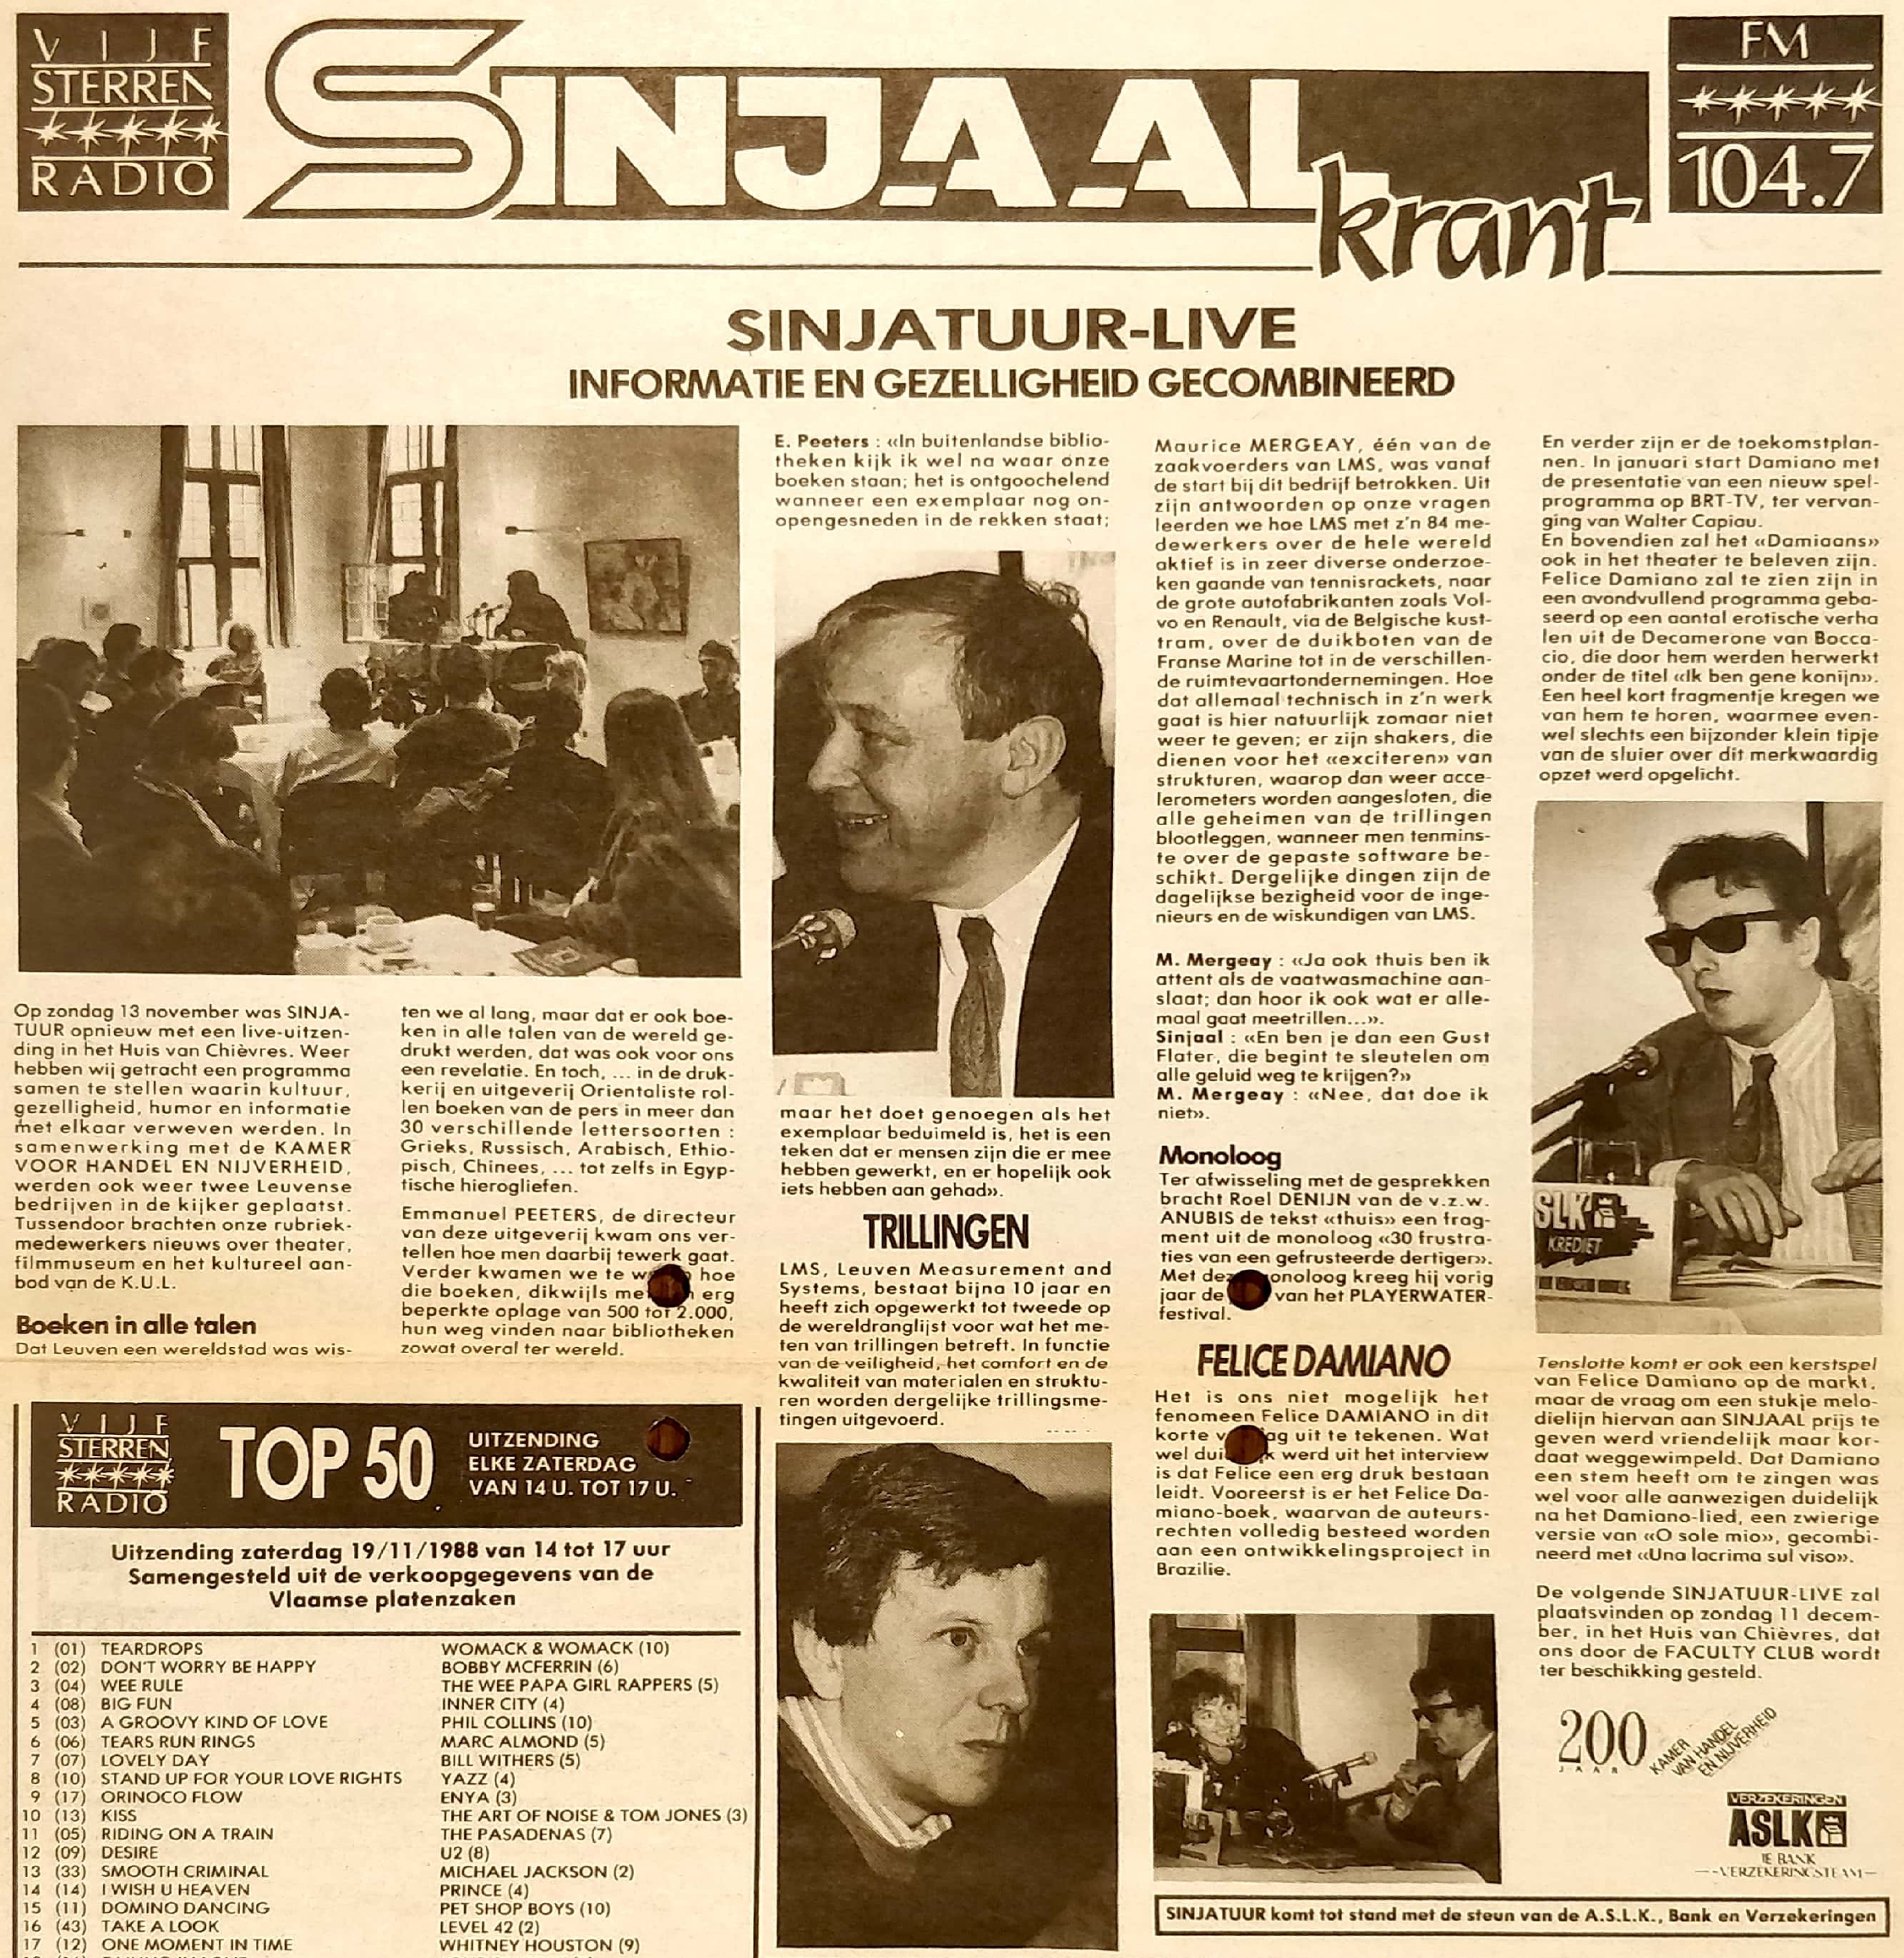 Radio Sinjaal